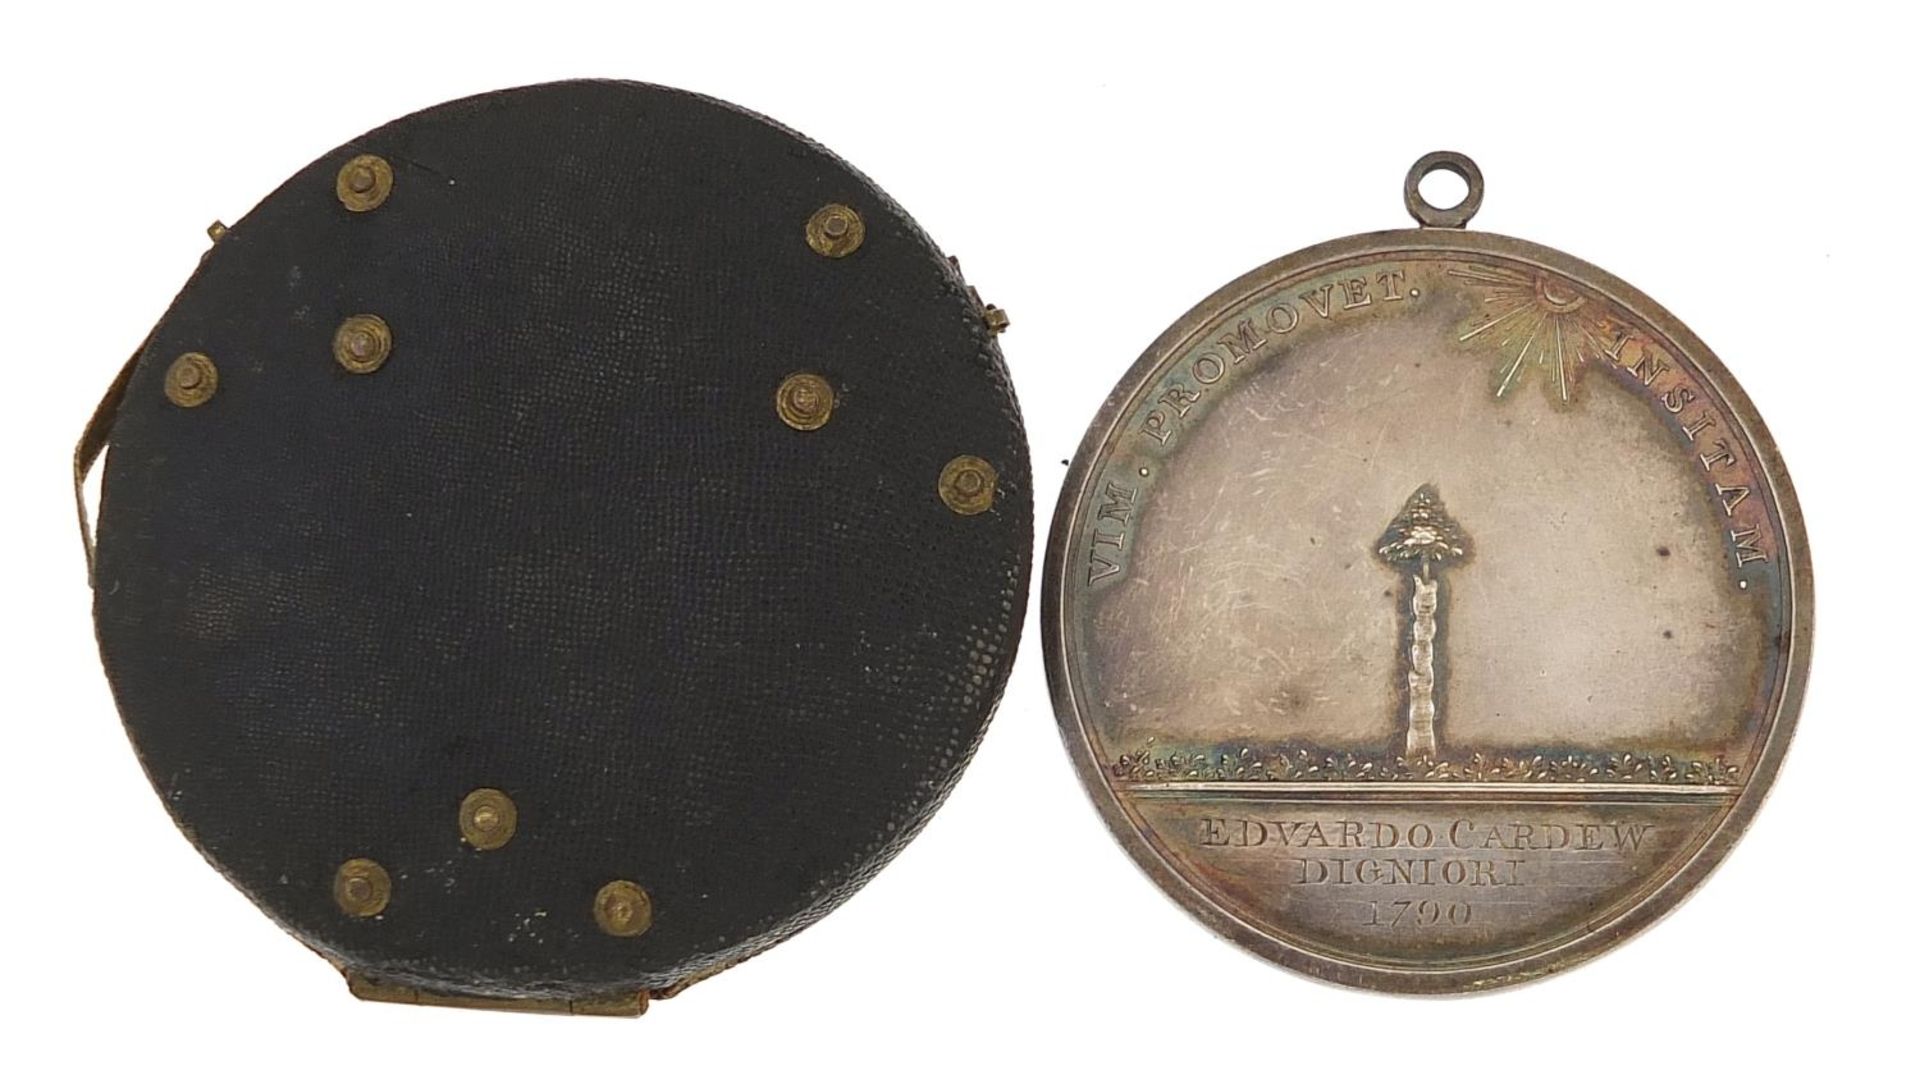 Georgian white metal medallion with shagreen case, the medallion engraved Edvardo Cardew Digniori